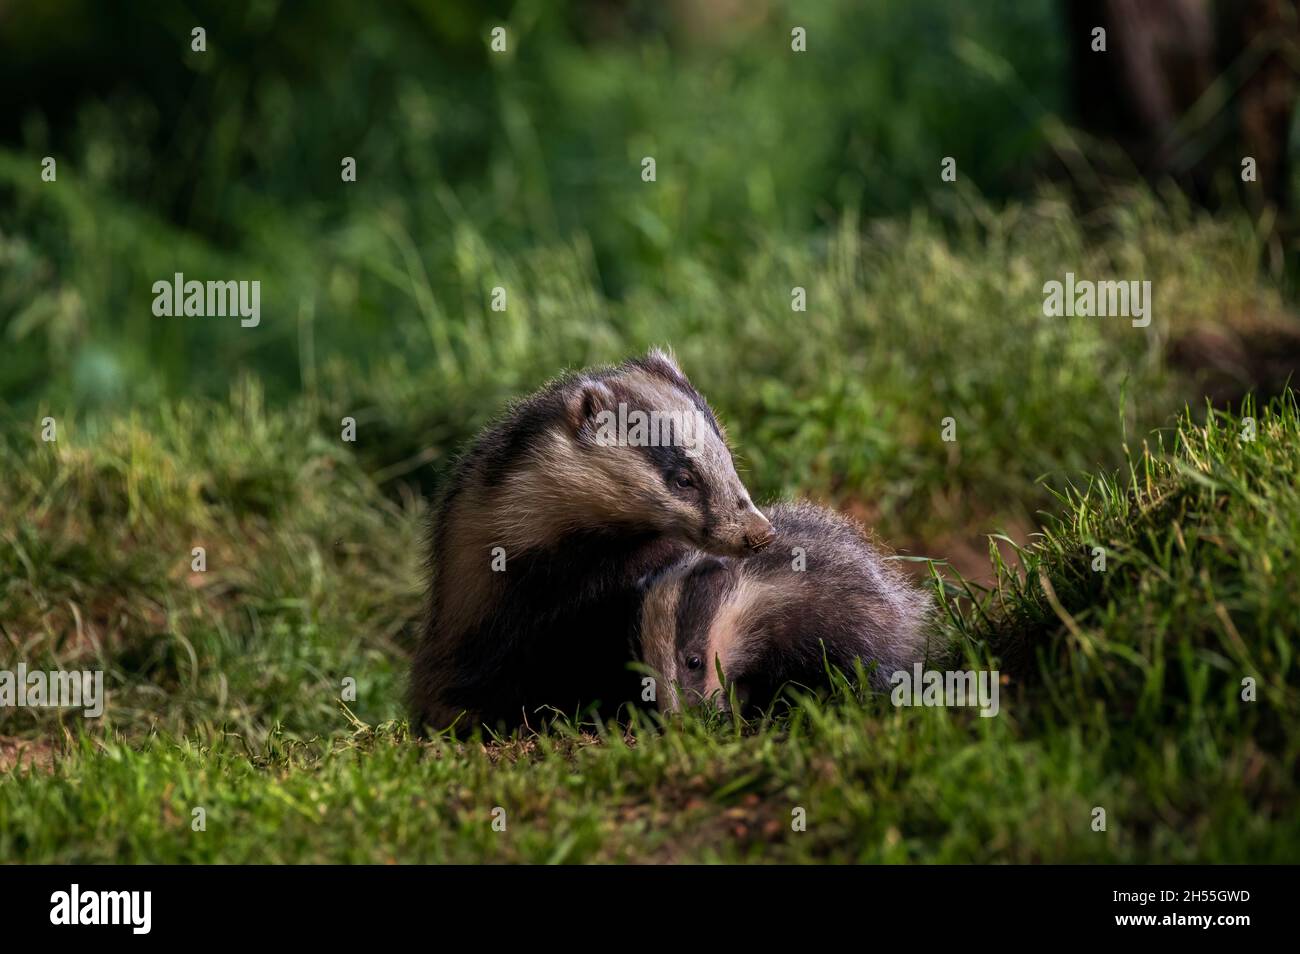 Badger, Meles meles Stock Photo